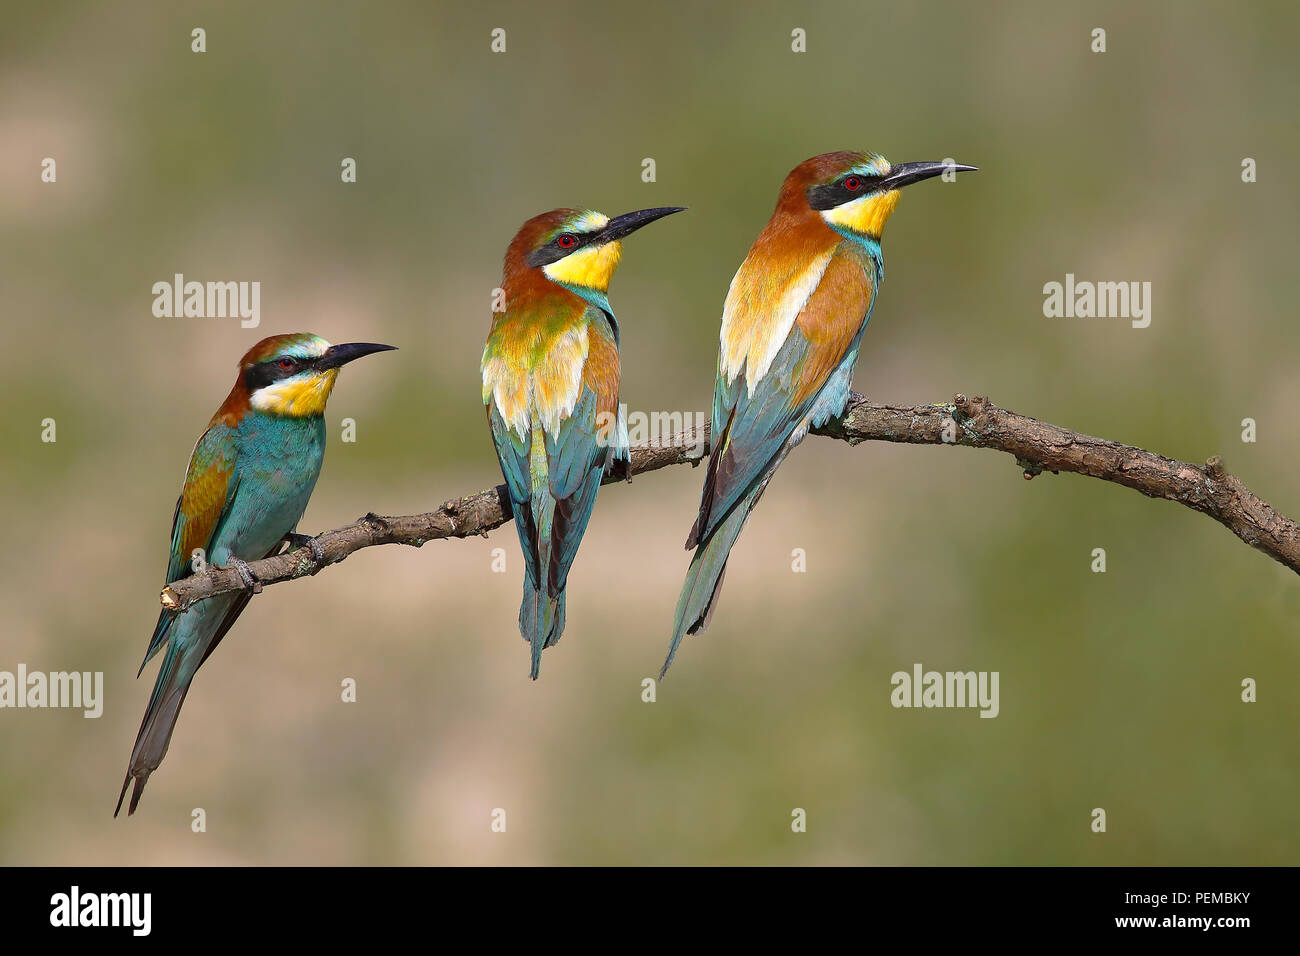 Guêpiers d'Europe (Merops apiaster), trois oiseaux sont assis sur la branche, Parc national du lac de Neusiedl, Burgenland, Autriche Banque D'Images